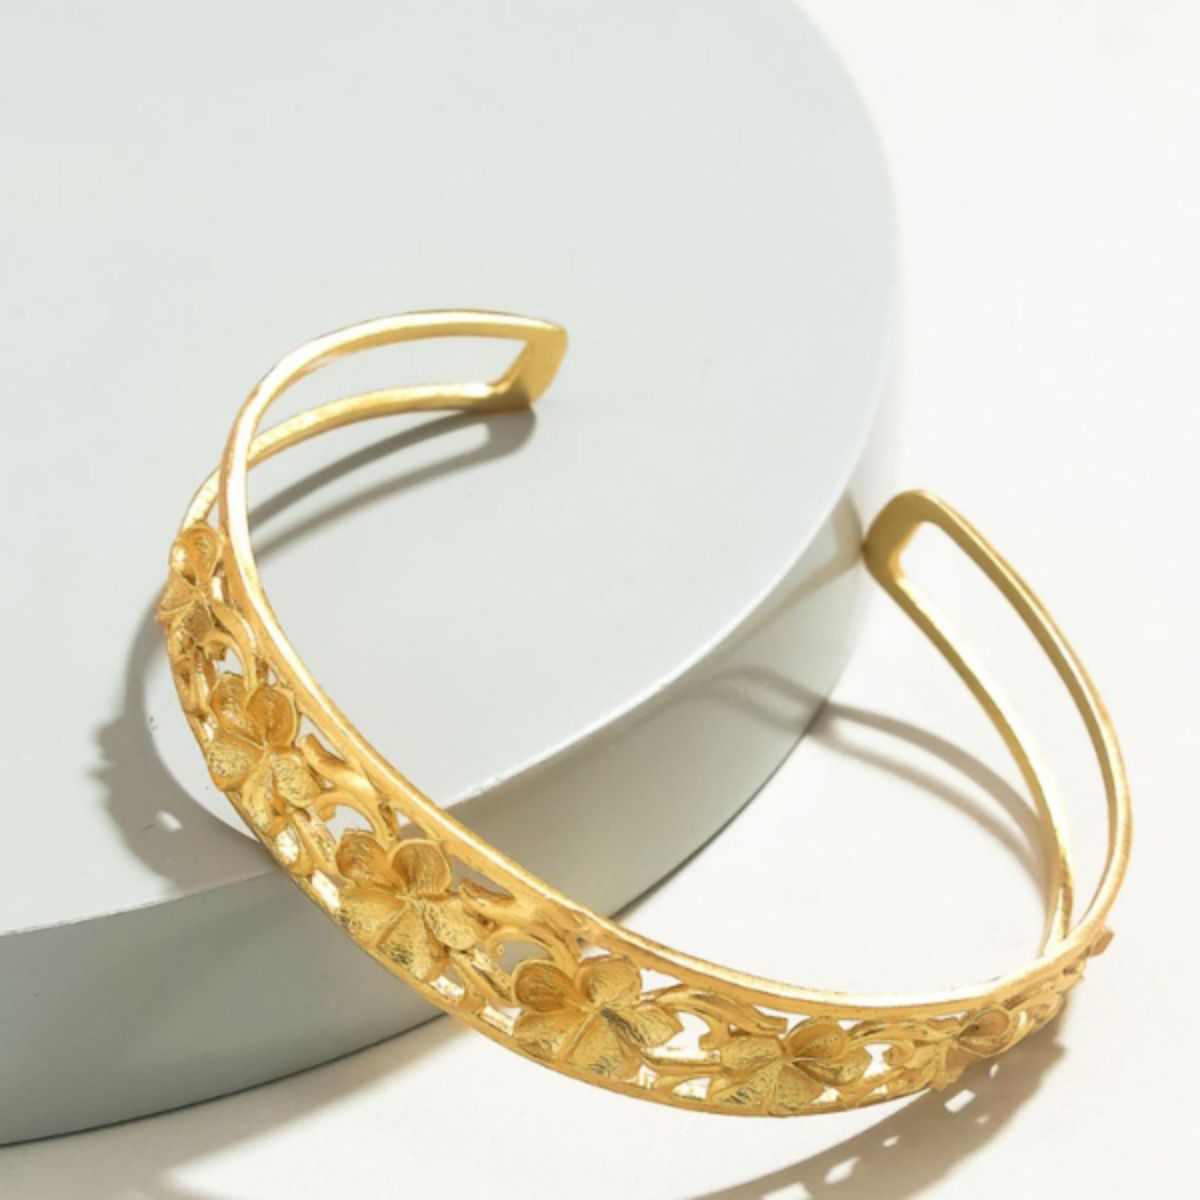 Gold-Toned Adjustable Floral Cuff Bracelet